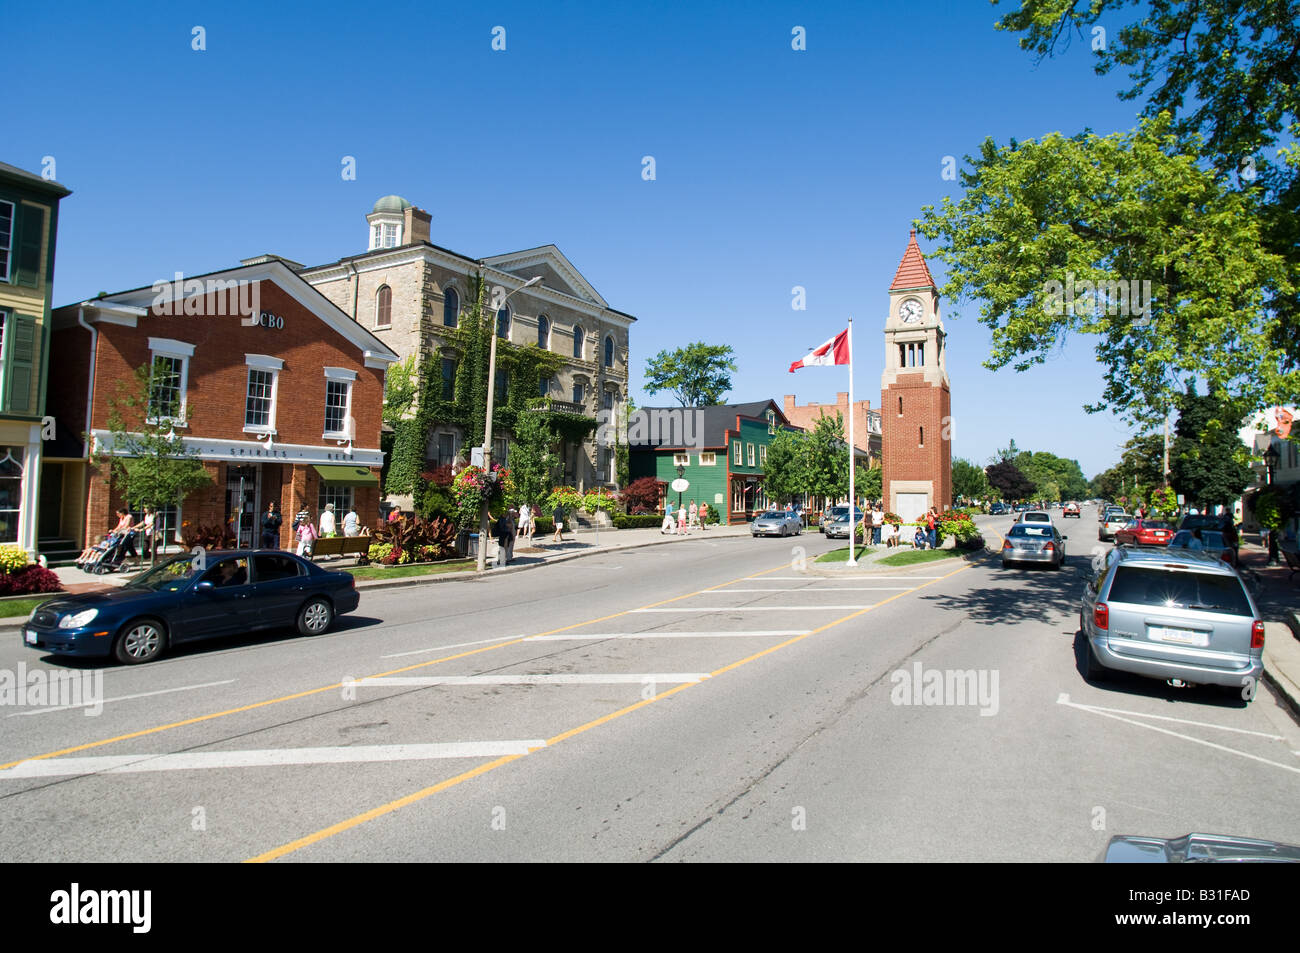 Touristen flanieren Sie entlang der Innenstadt Bürgersteige von Niagara-on-the-Lake, Ontario, ein beliebtes Touristenziel während der Sommer-Motten. Stockfoto